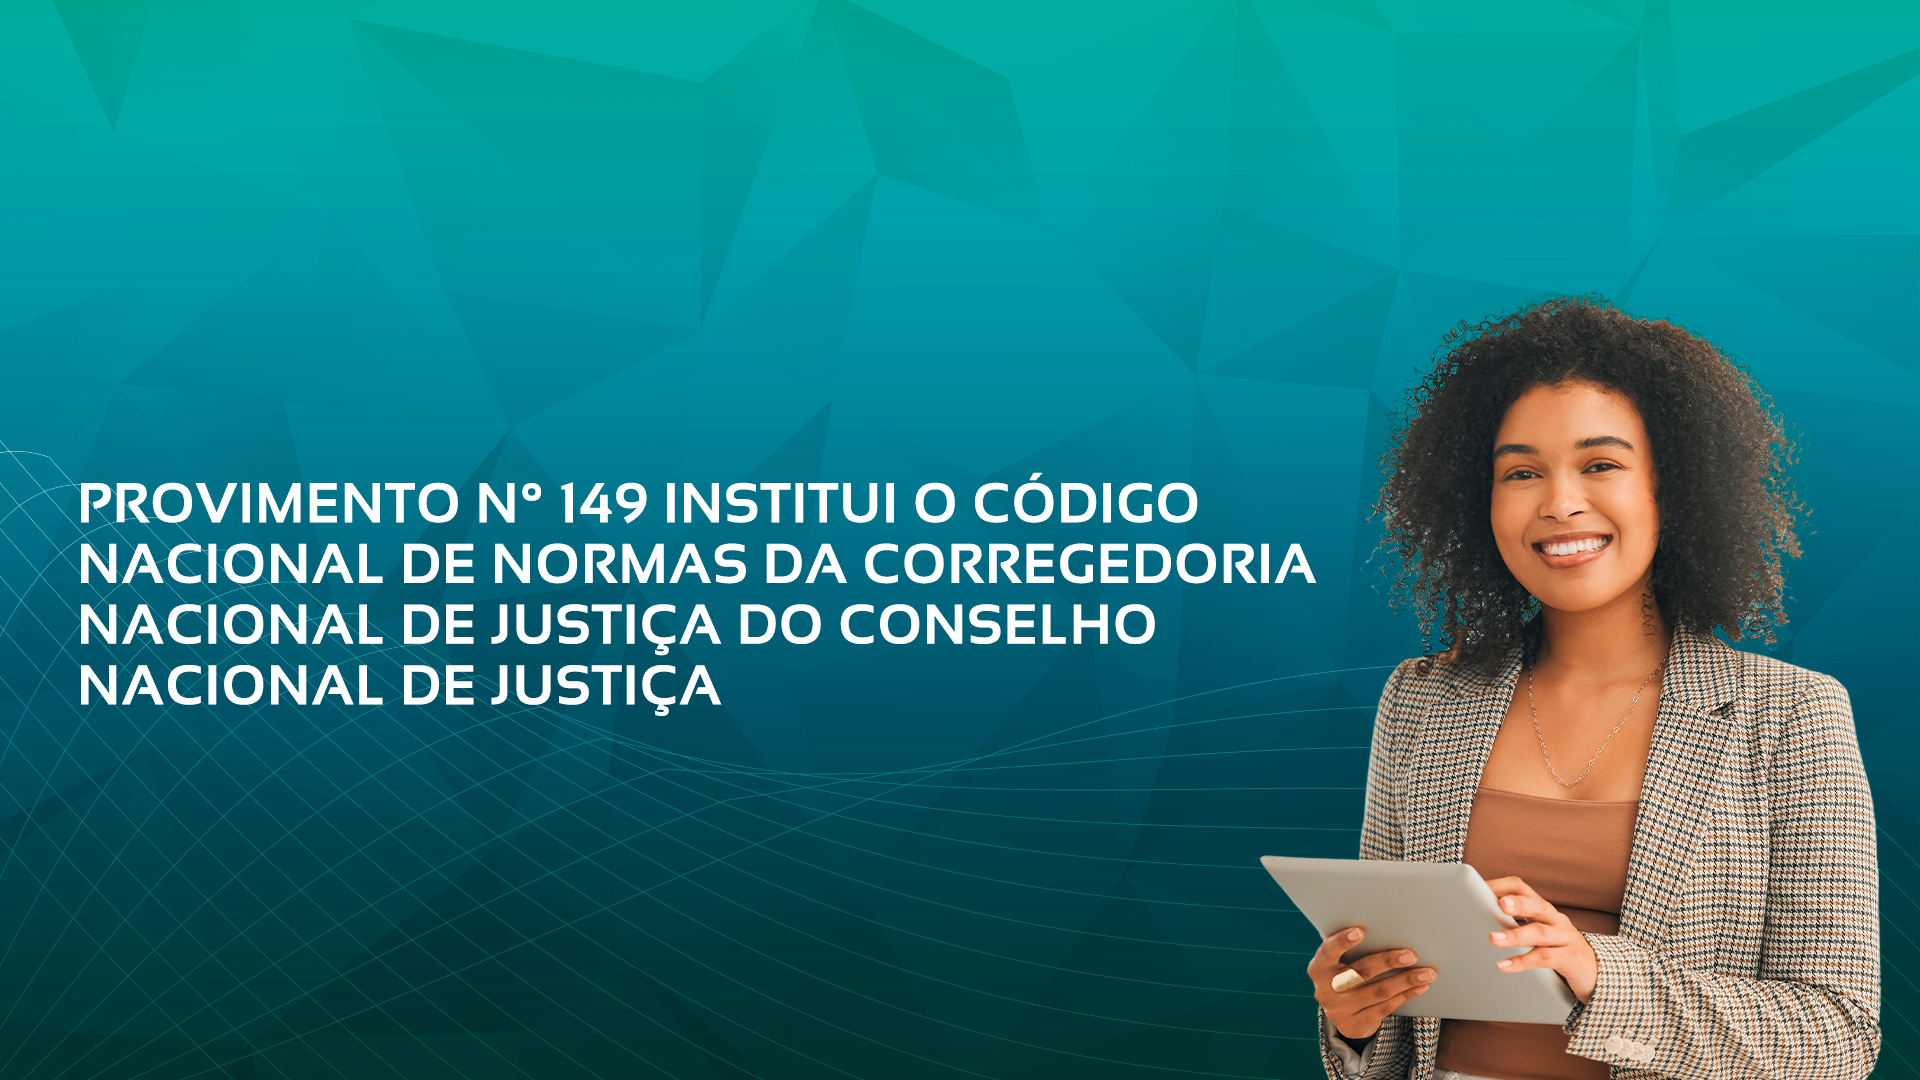 Conselho Nacional De Justiça Publica Provimento Que Estabelece Código Nacional De Normas Da Corregedoria Nacional De Justiça Para Os Procedimentos Extrajudiciais.